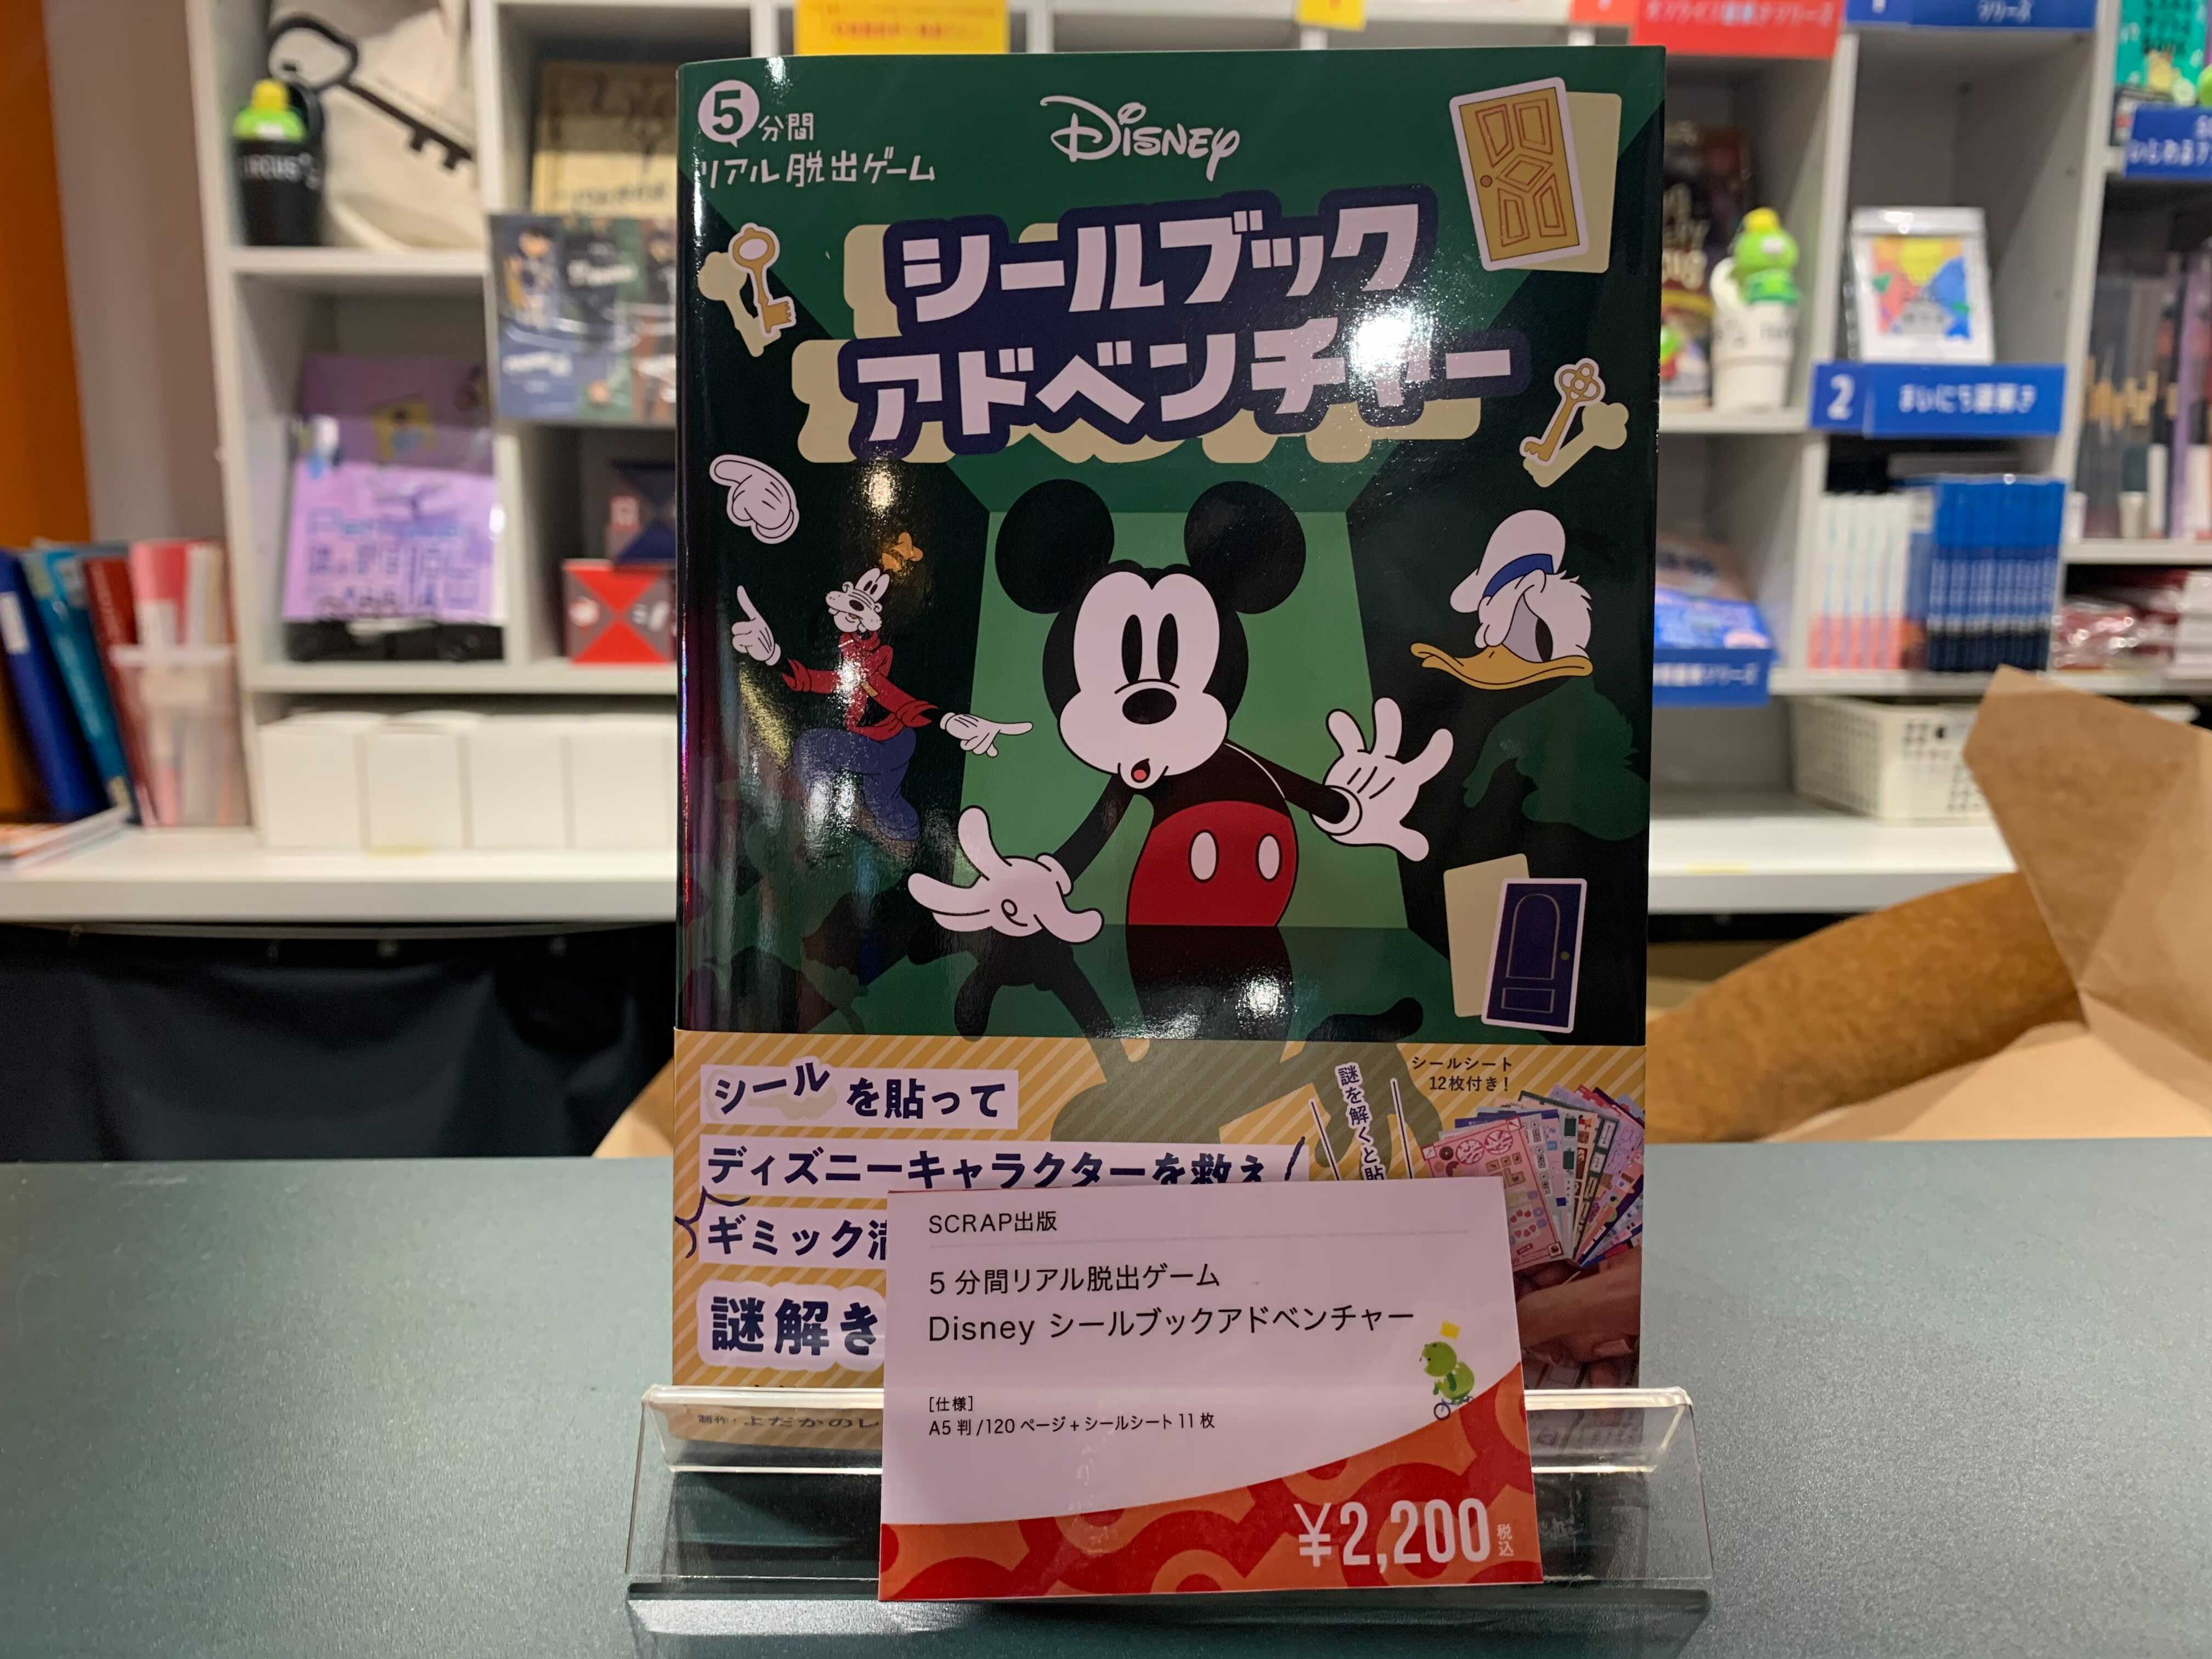 東京ミステリーサーカス 5分間リアル脱出ゲーム Disneyシールブックアドベンチャー 東京ミステリーサーカス 1fグッズショップでも販売中です 年末年始ご自宅でゆっくり謎解きがお楽しみいただけます 22 00まで営業中です クリスマス プレゼントに